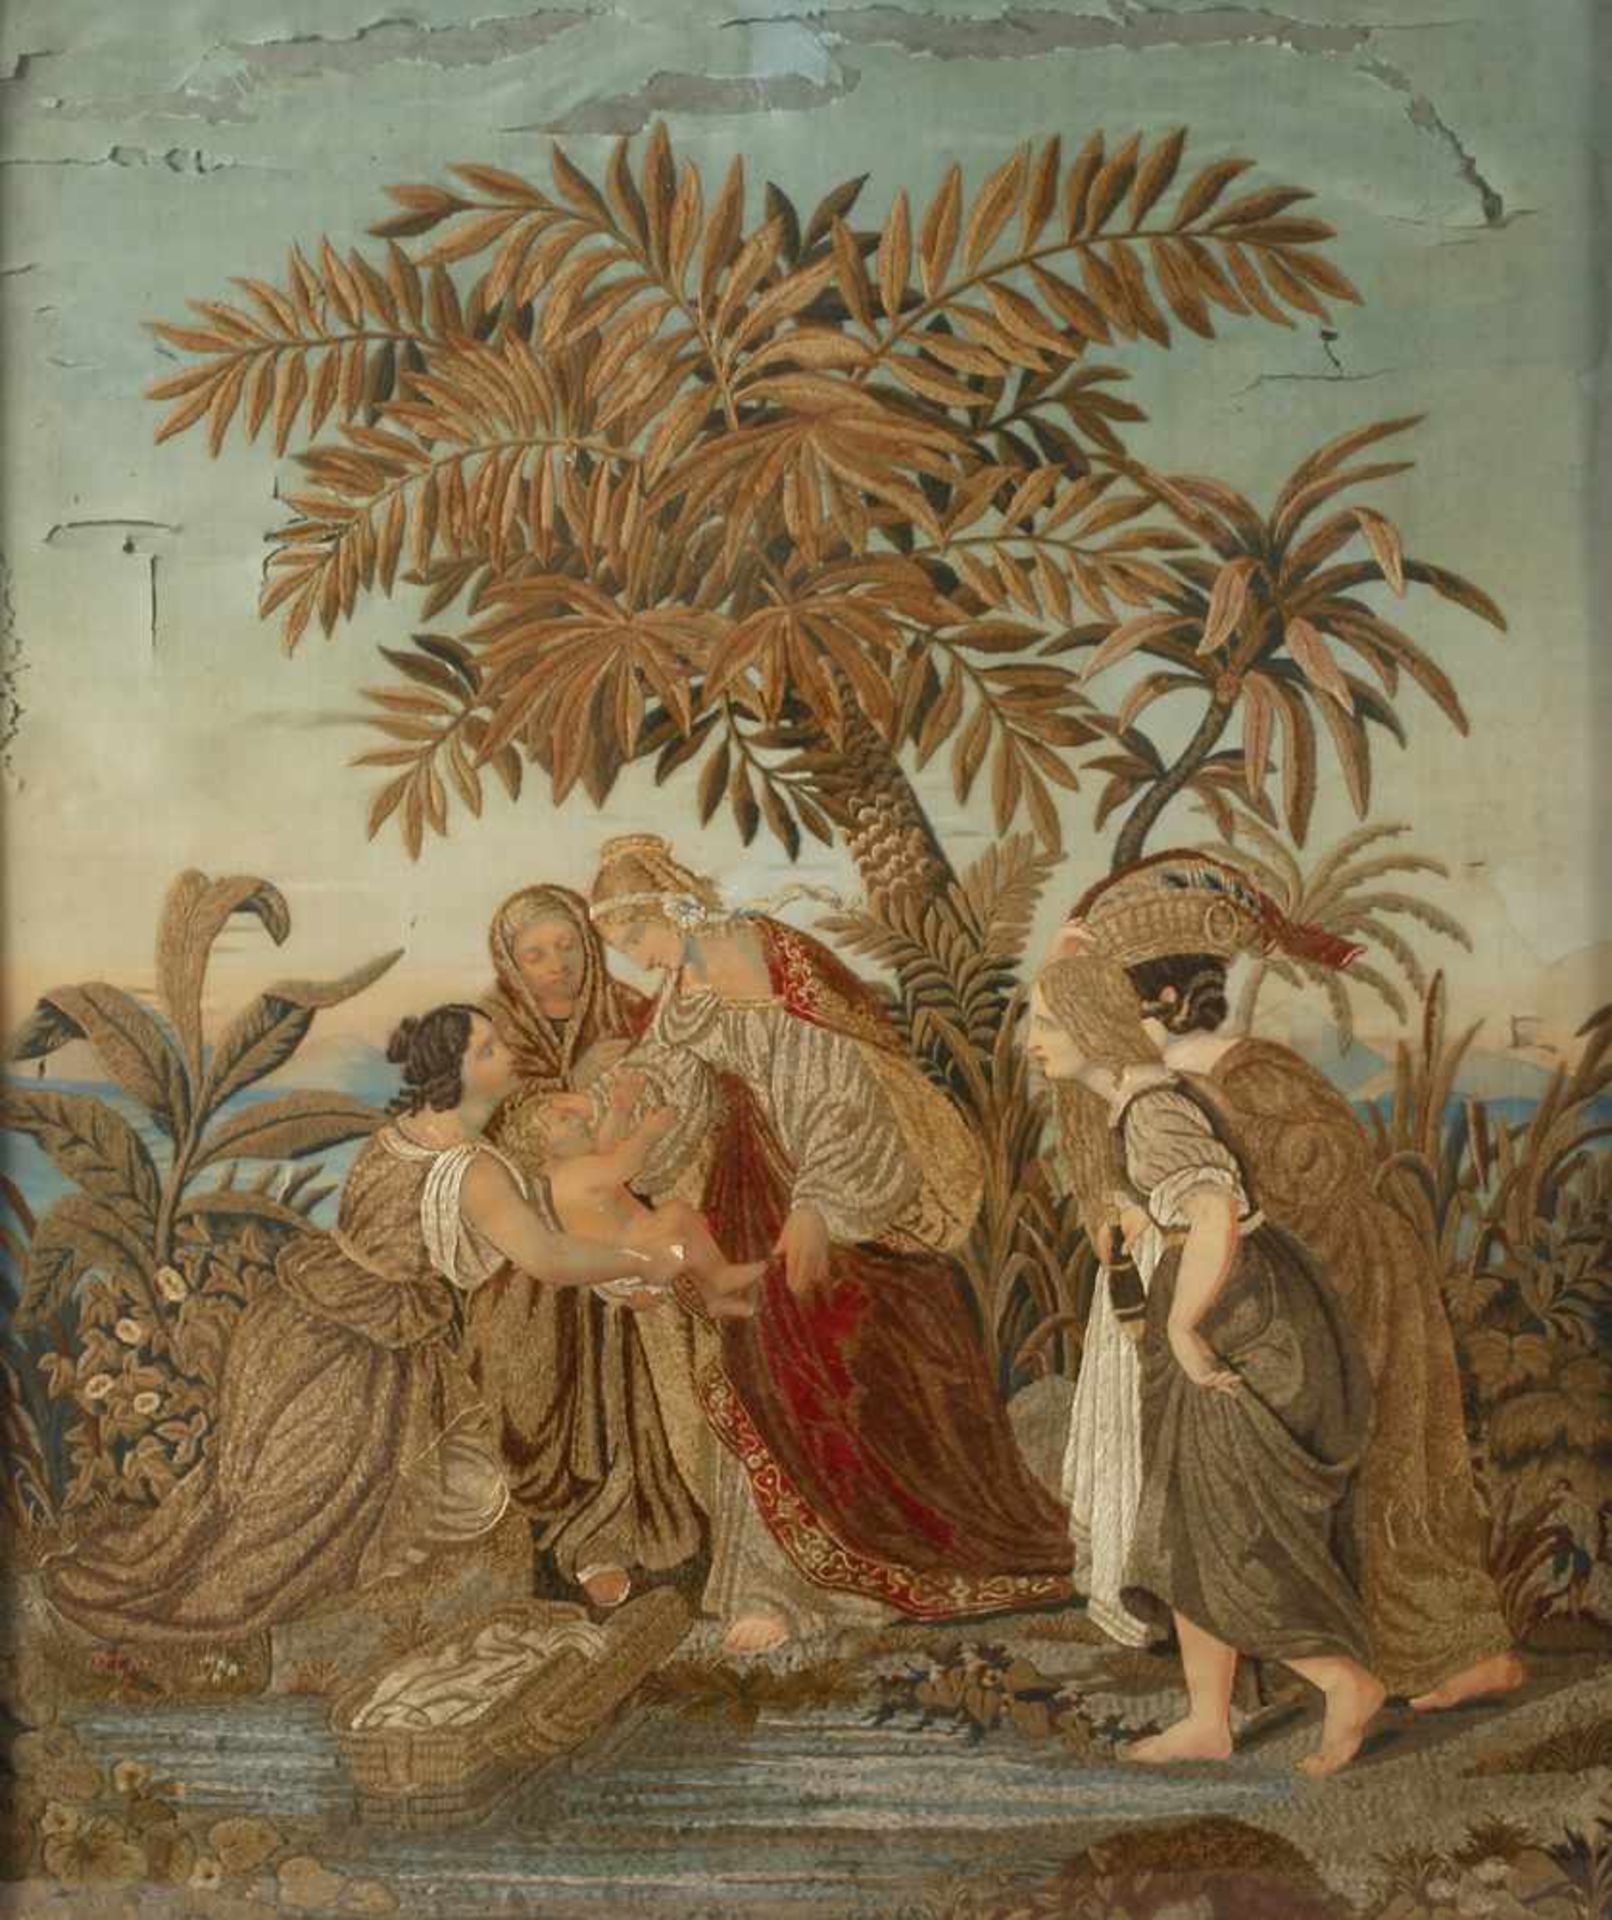 Seidenstickbild Biedermeier1. Drittel 19. Jh., unsigniert, alttestamentarische Szene mit Darstellung